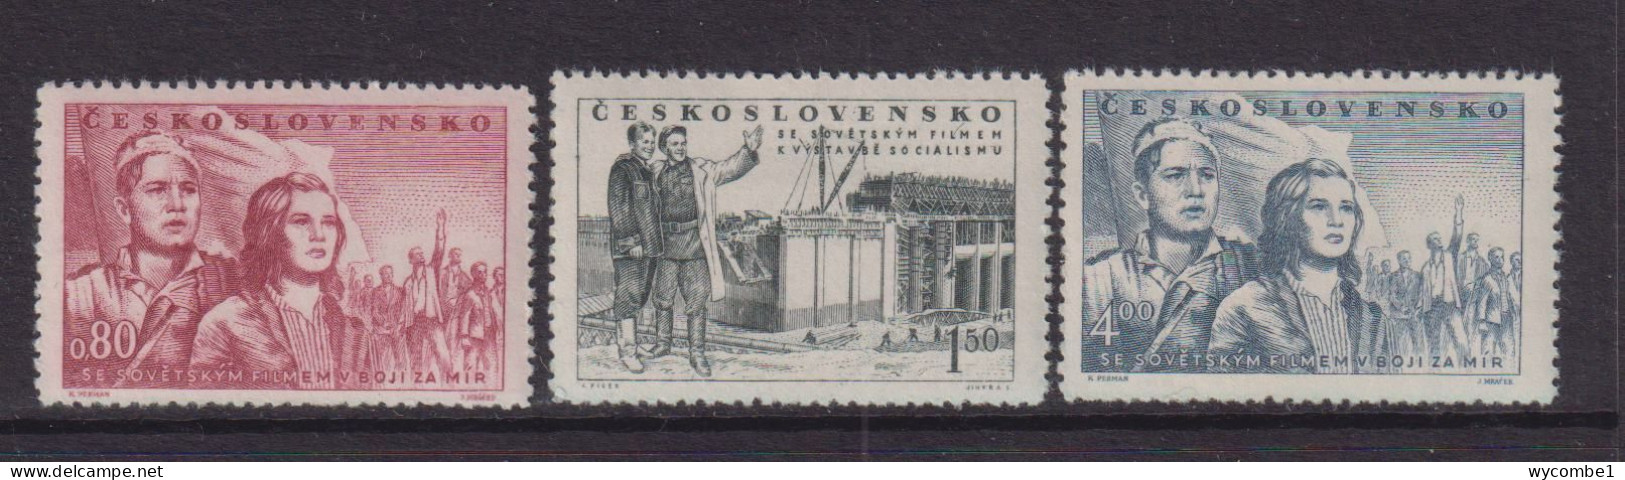 CZECHOSLOVAKIA  - 1951  Film Festival Set   Never Hinged Mint - Unused Stamps